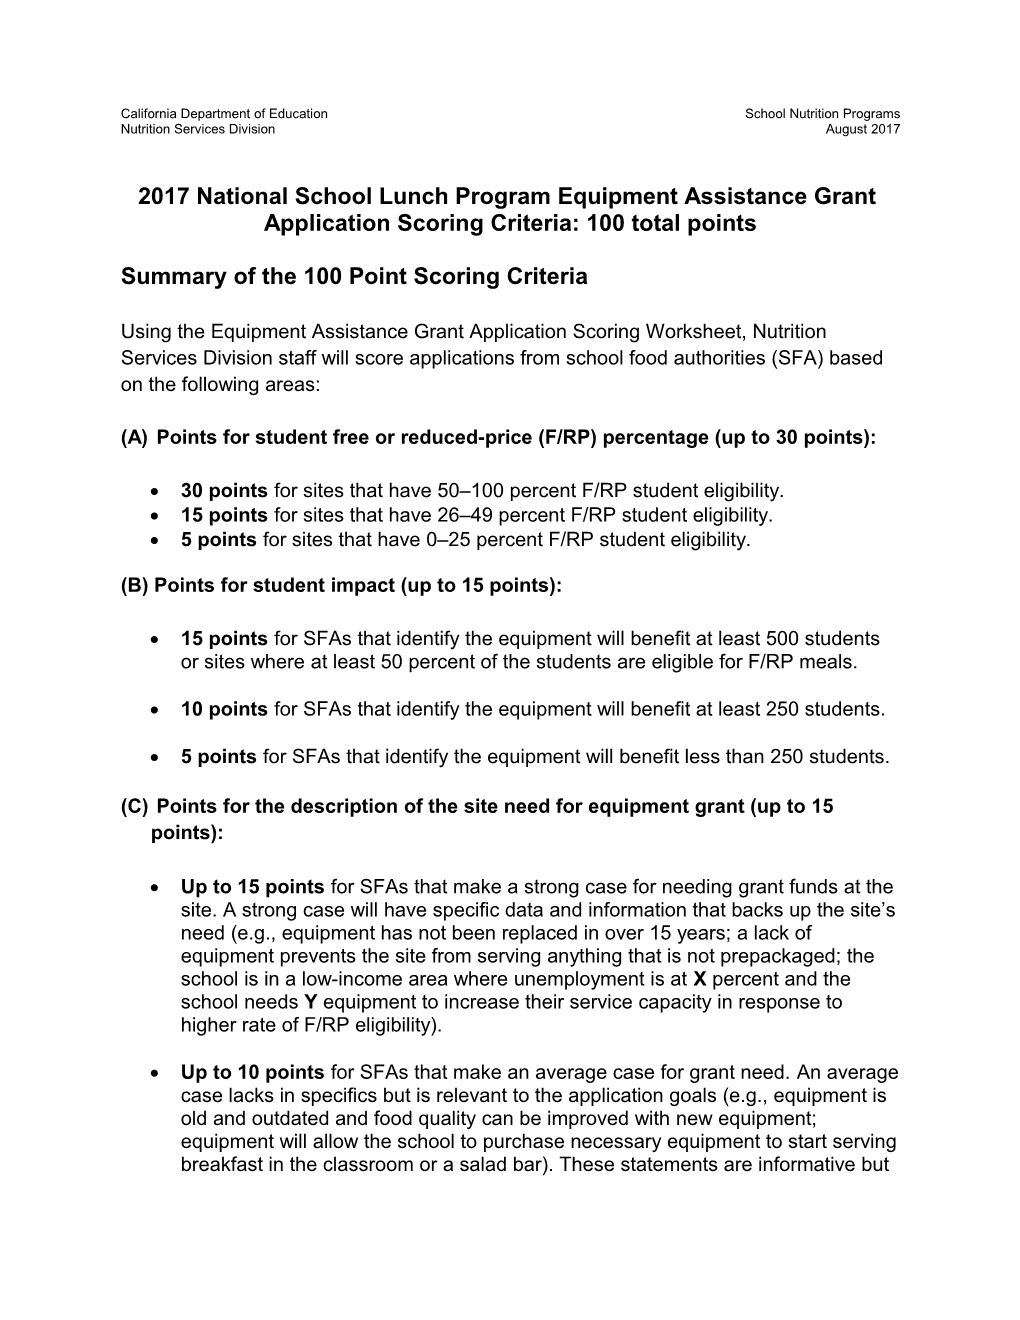 RFA: 2017 Equipment Grant Criteria (CA Dept of Education)